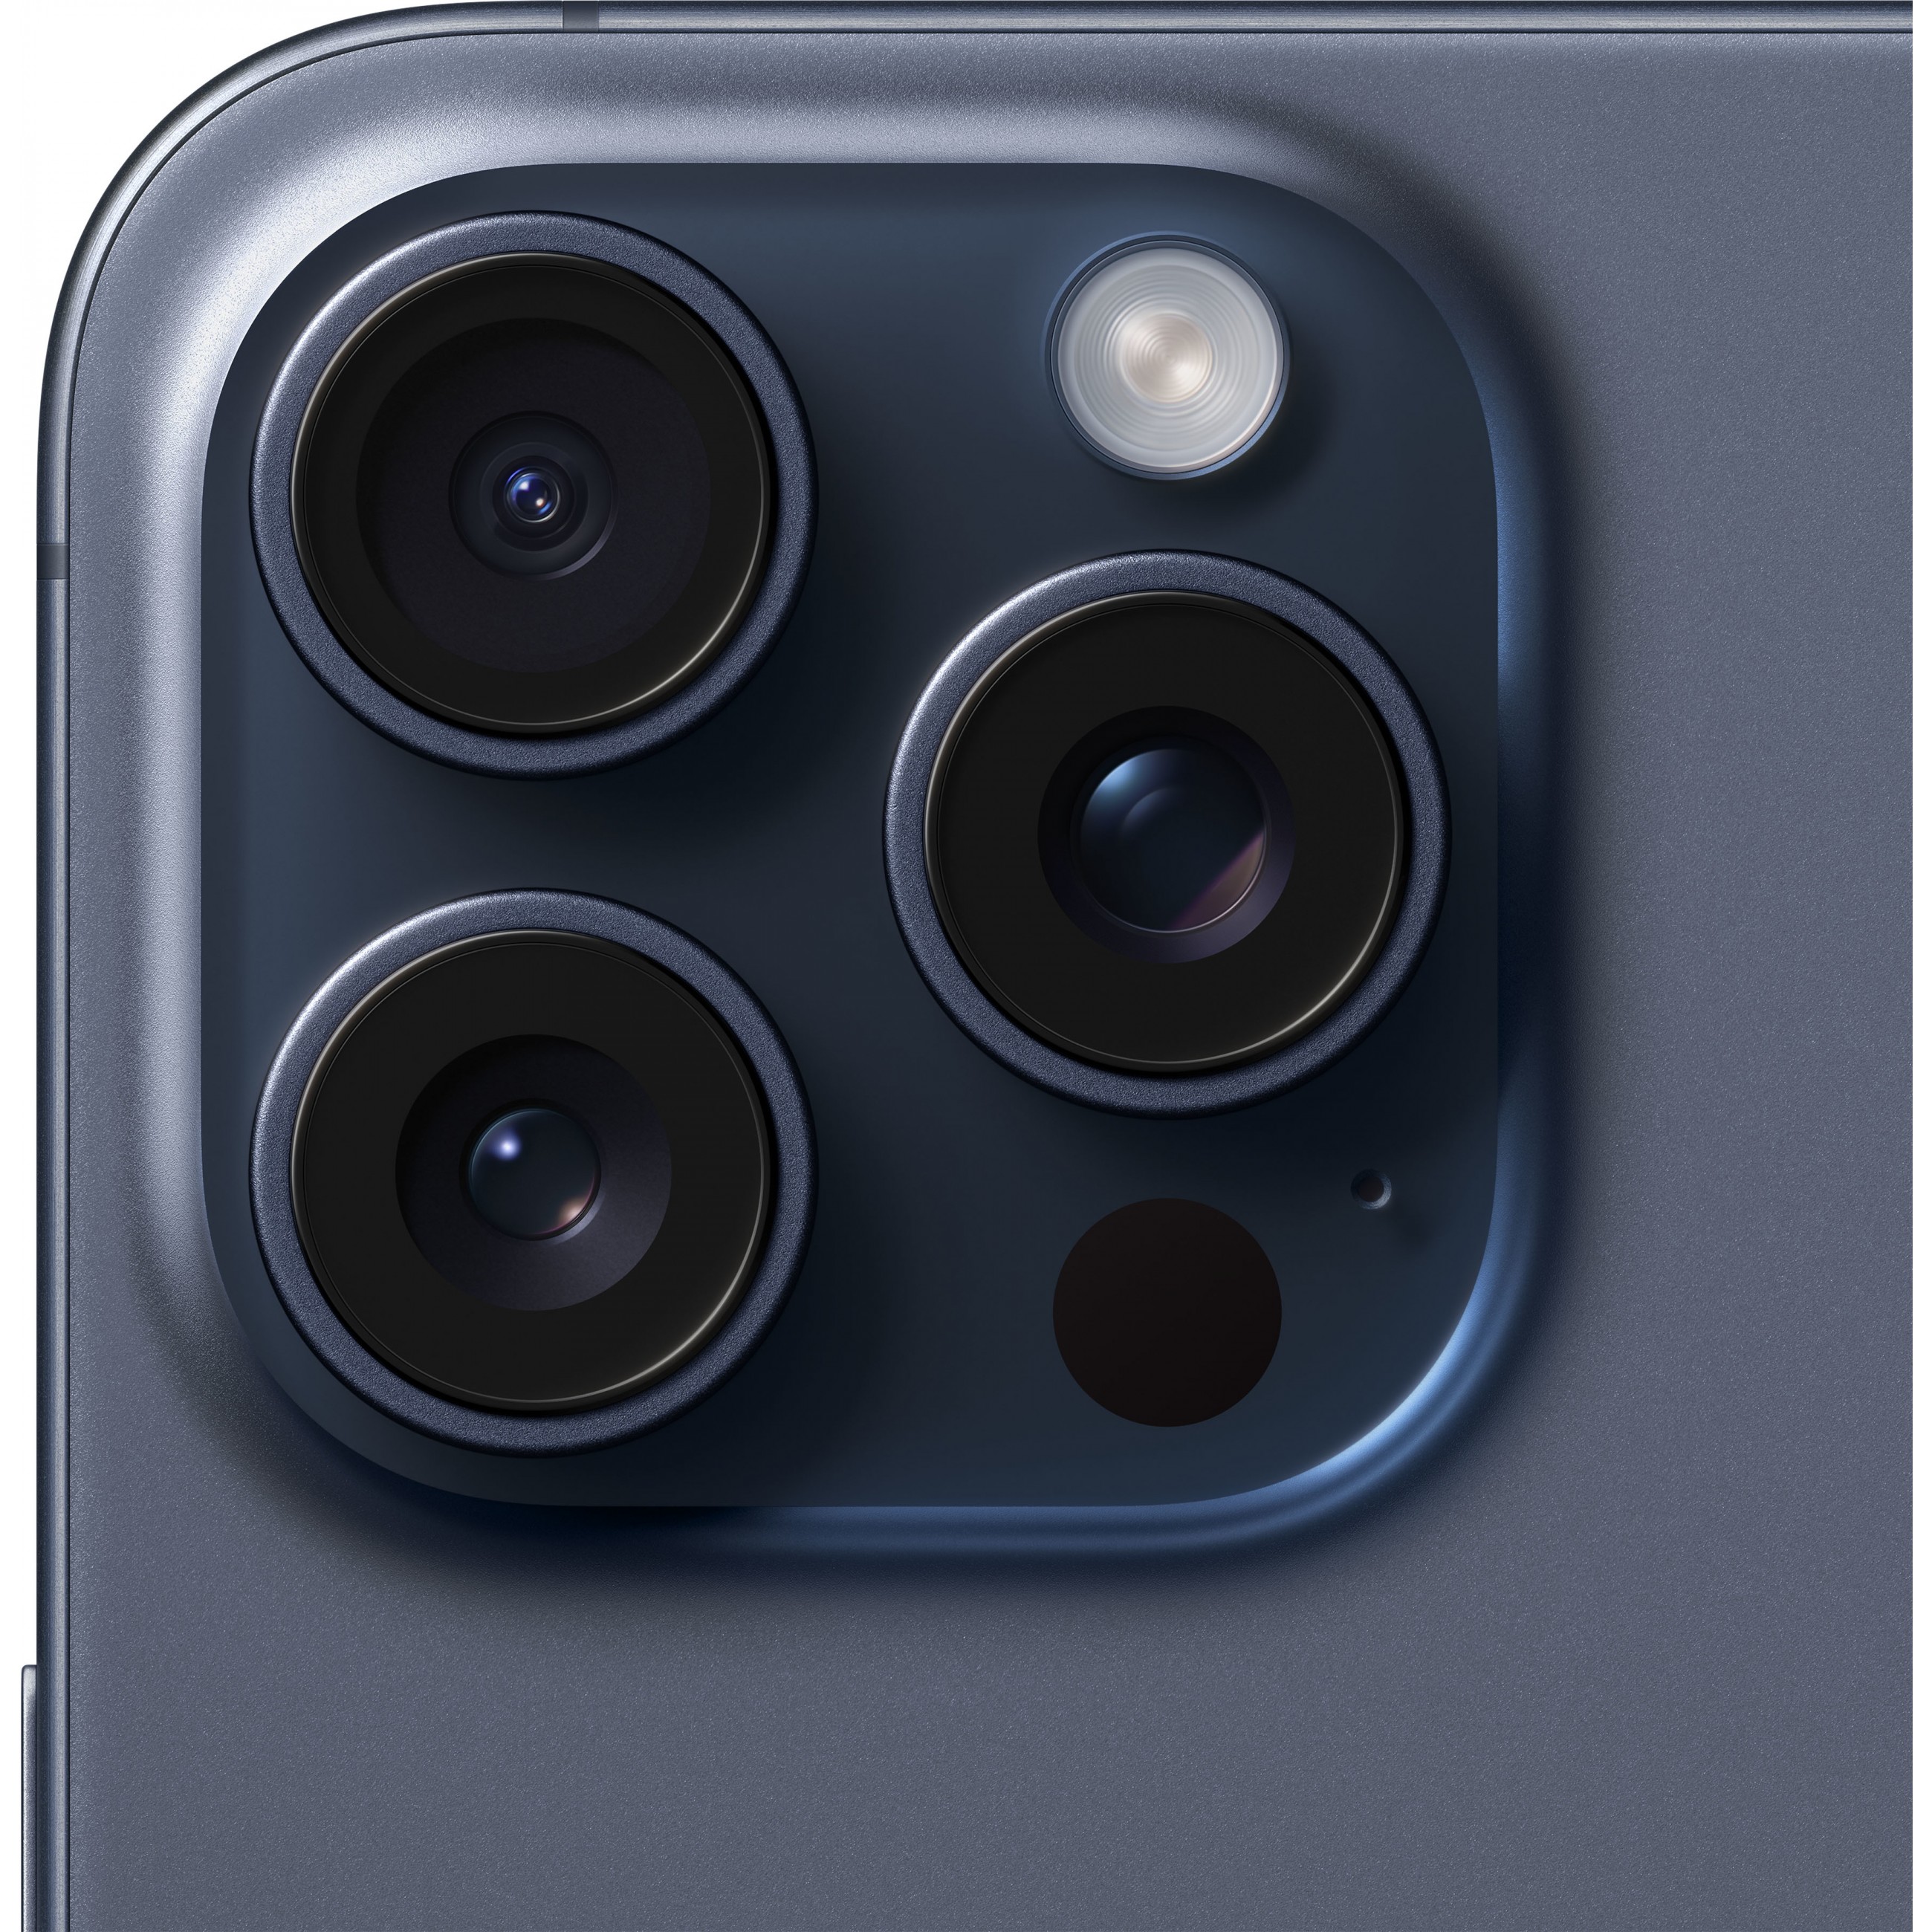 TEL Apple iPhone 15 Pro Max 256GB Blue Titanium NEW